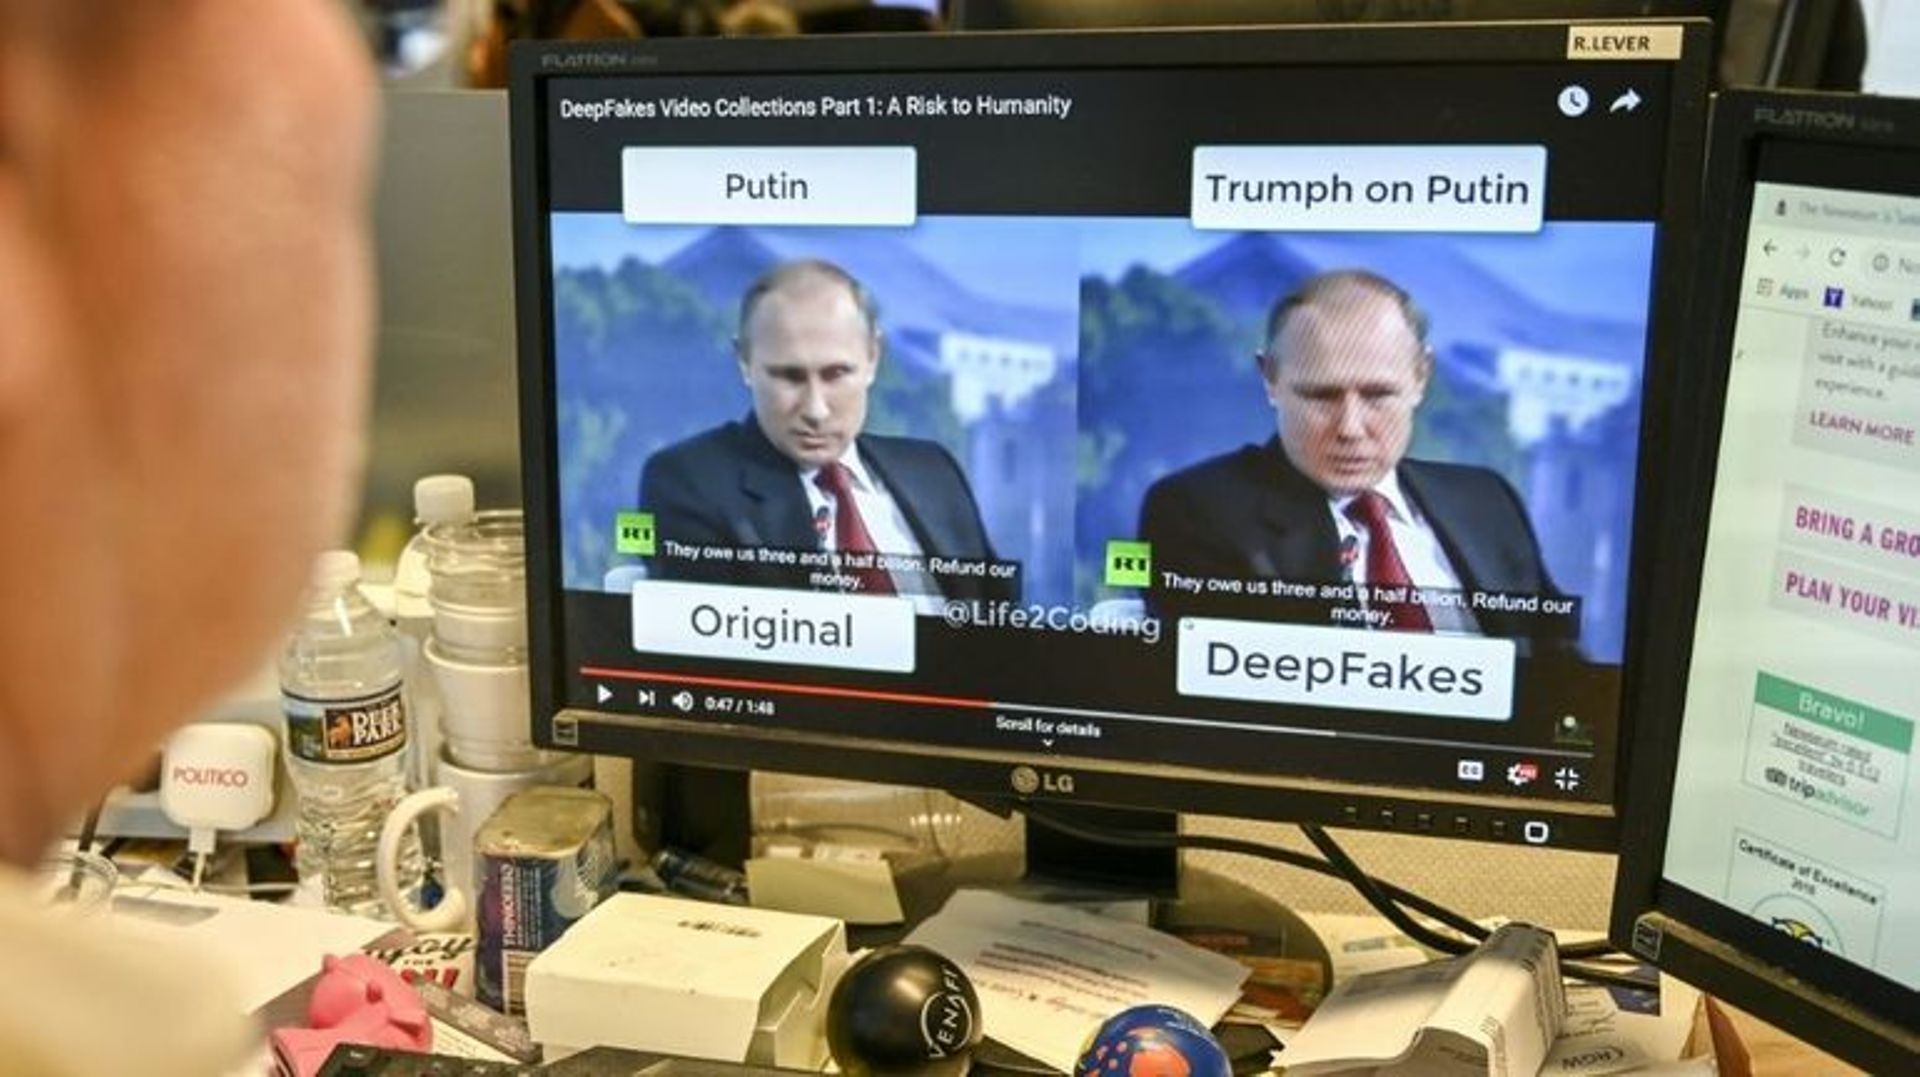 Les deepfakes, une arme de désinformation massive?